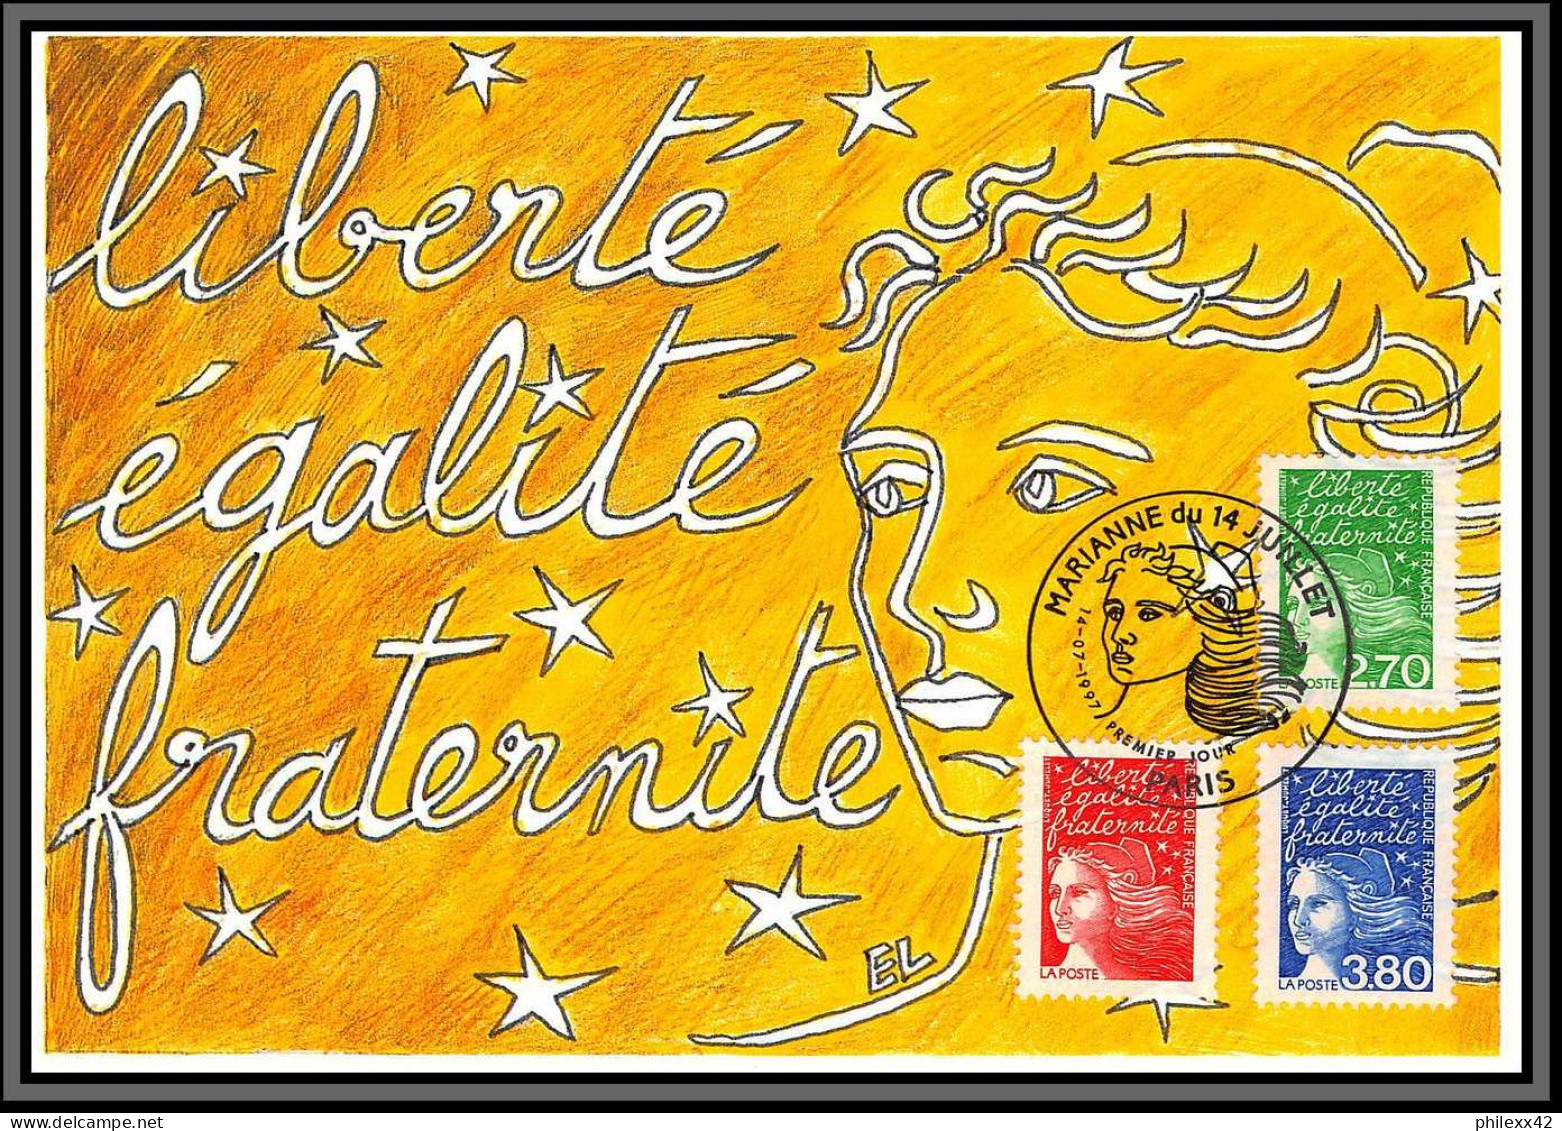 57529/ Carte maximum (card) France Année 1997 N°3042/3128 61 cartes différentes état superbe édition CEF